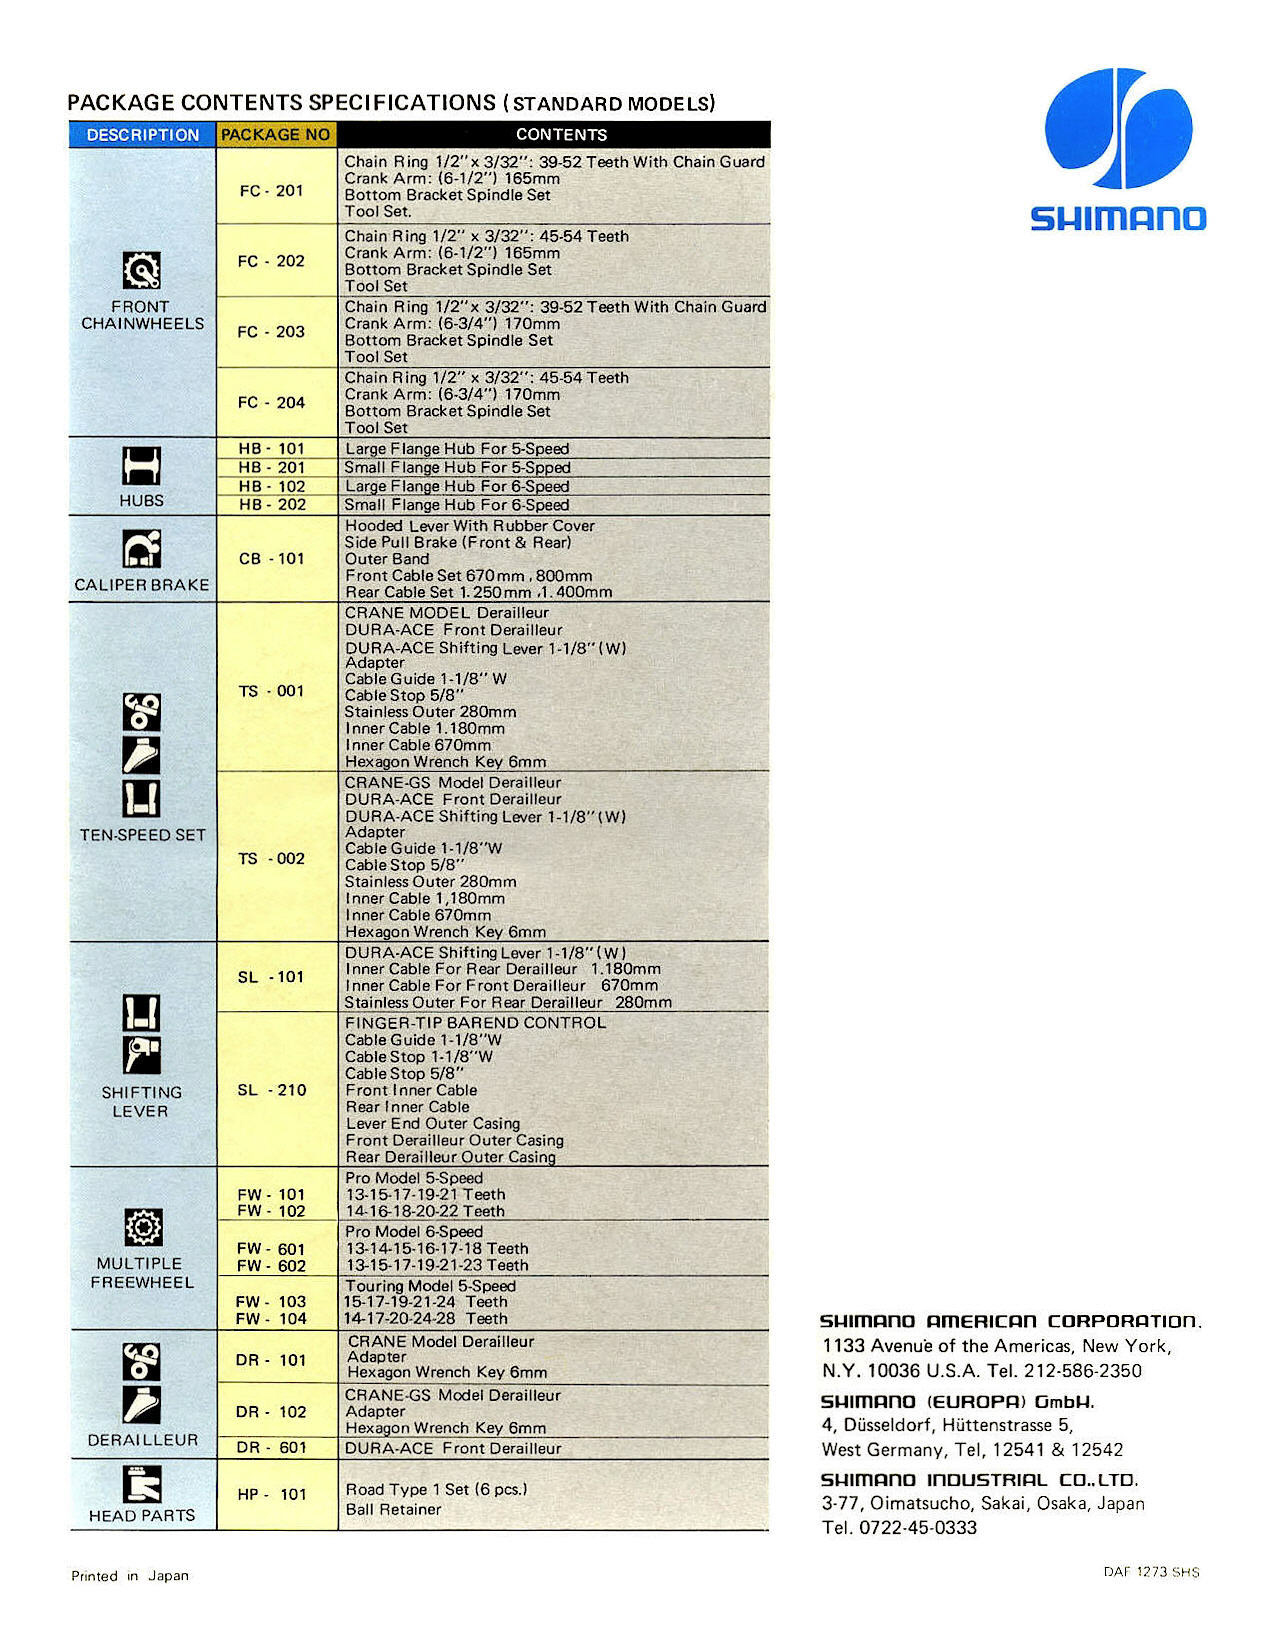 Shimano Dura-Ace catalog  (12-1973)